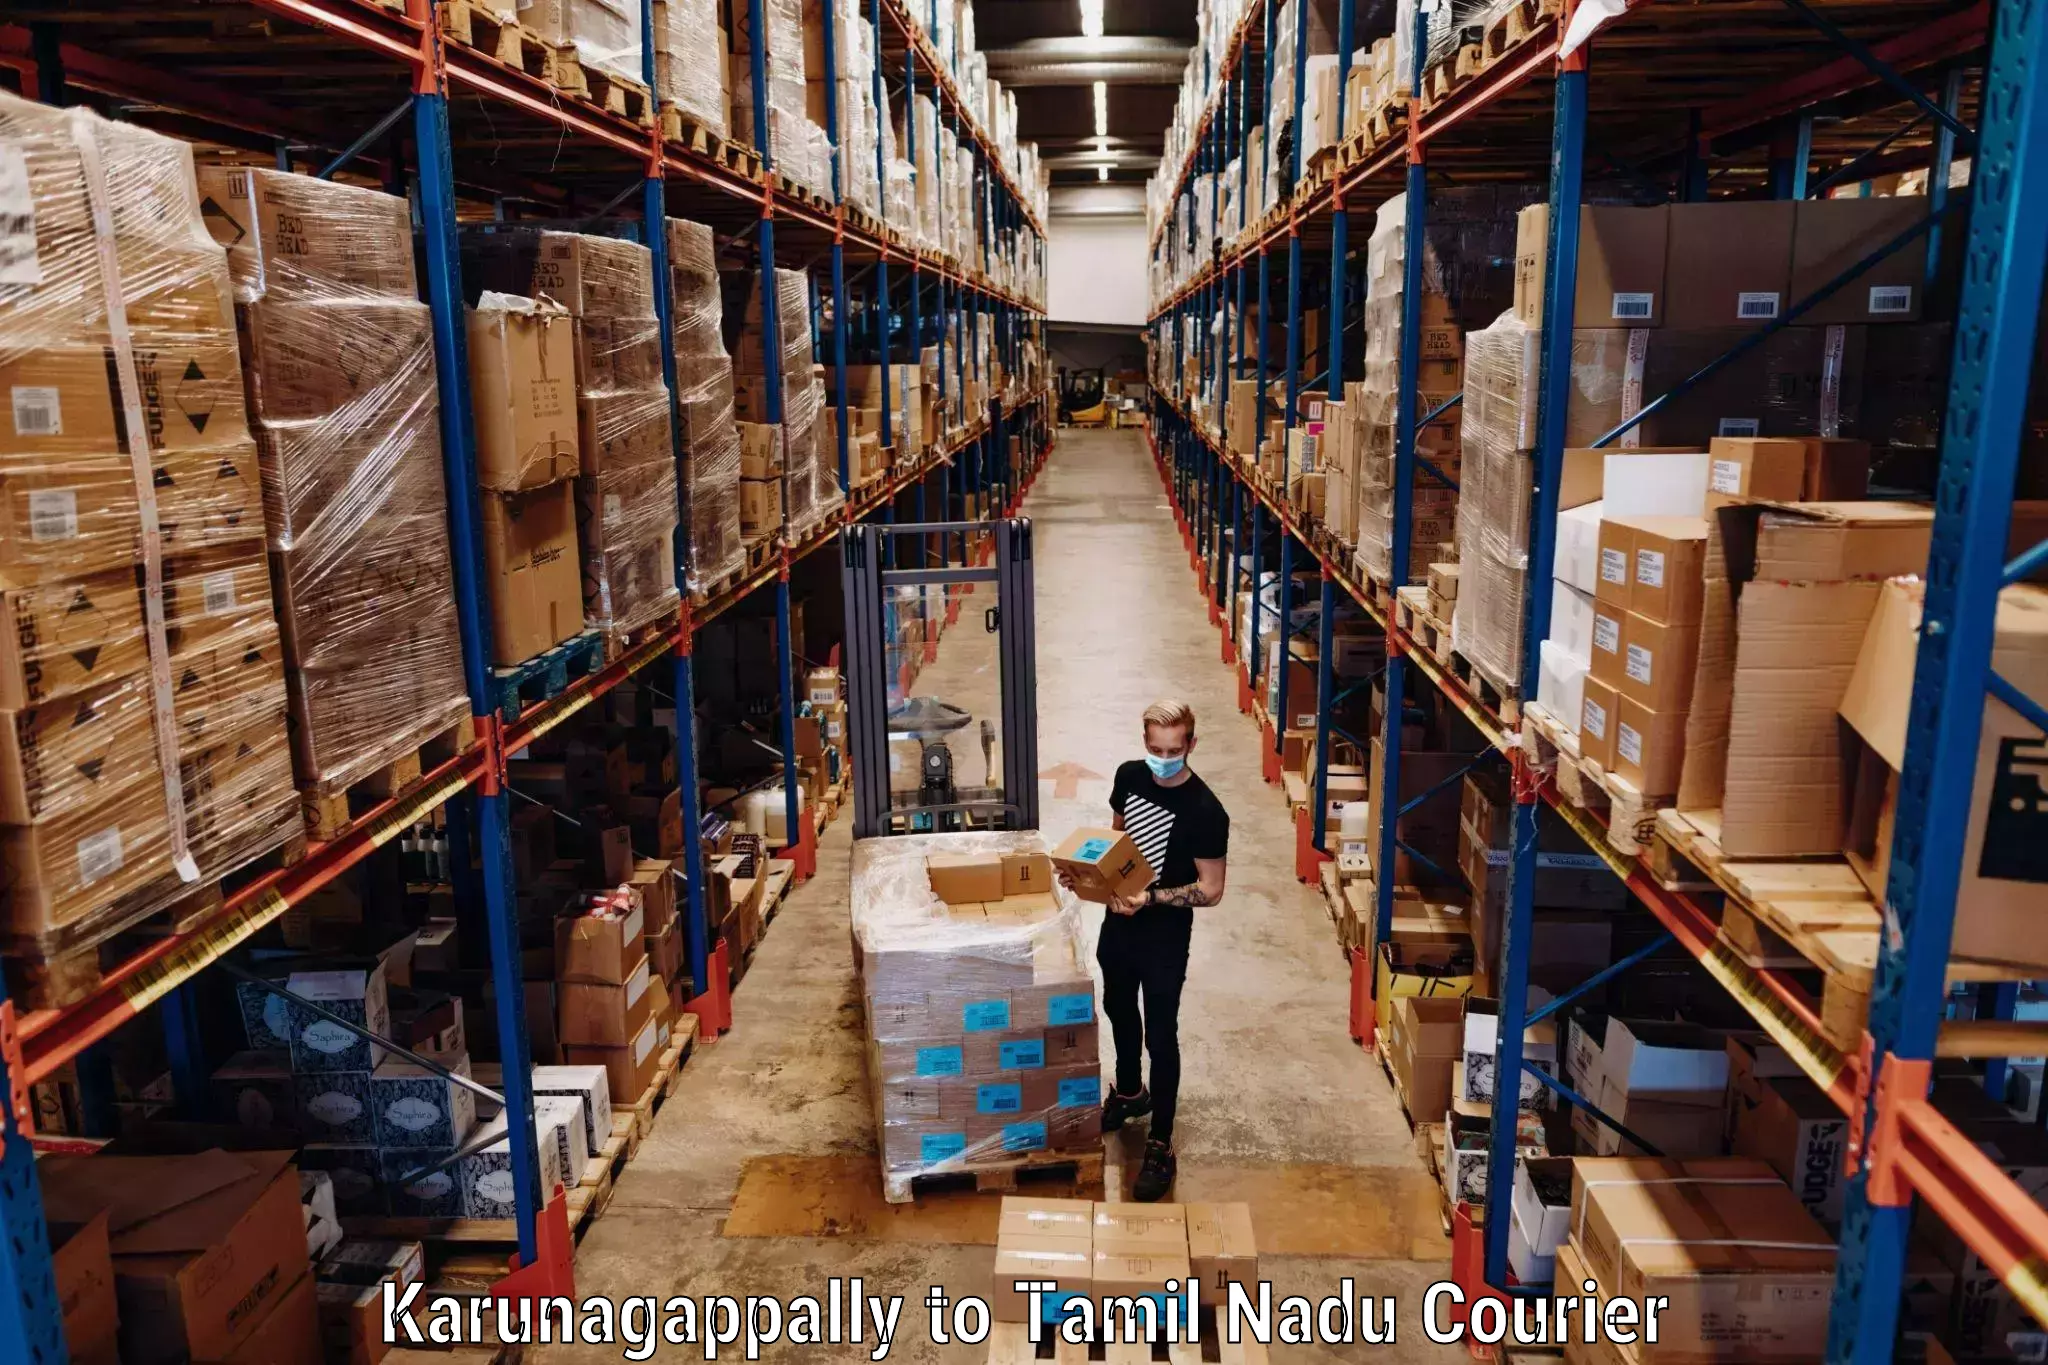 Baggage shipping calculator Karunagappally to Coimbatore